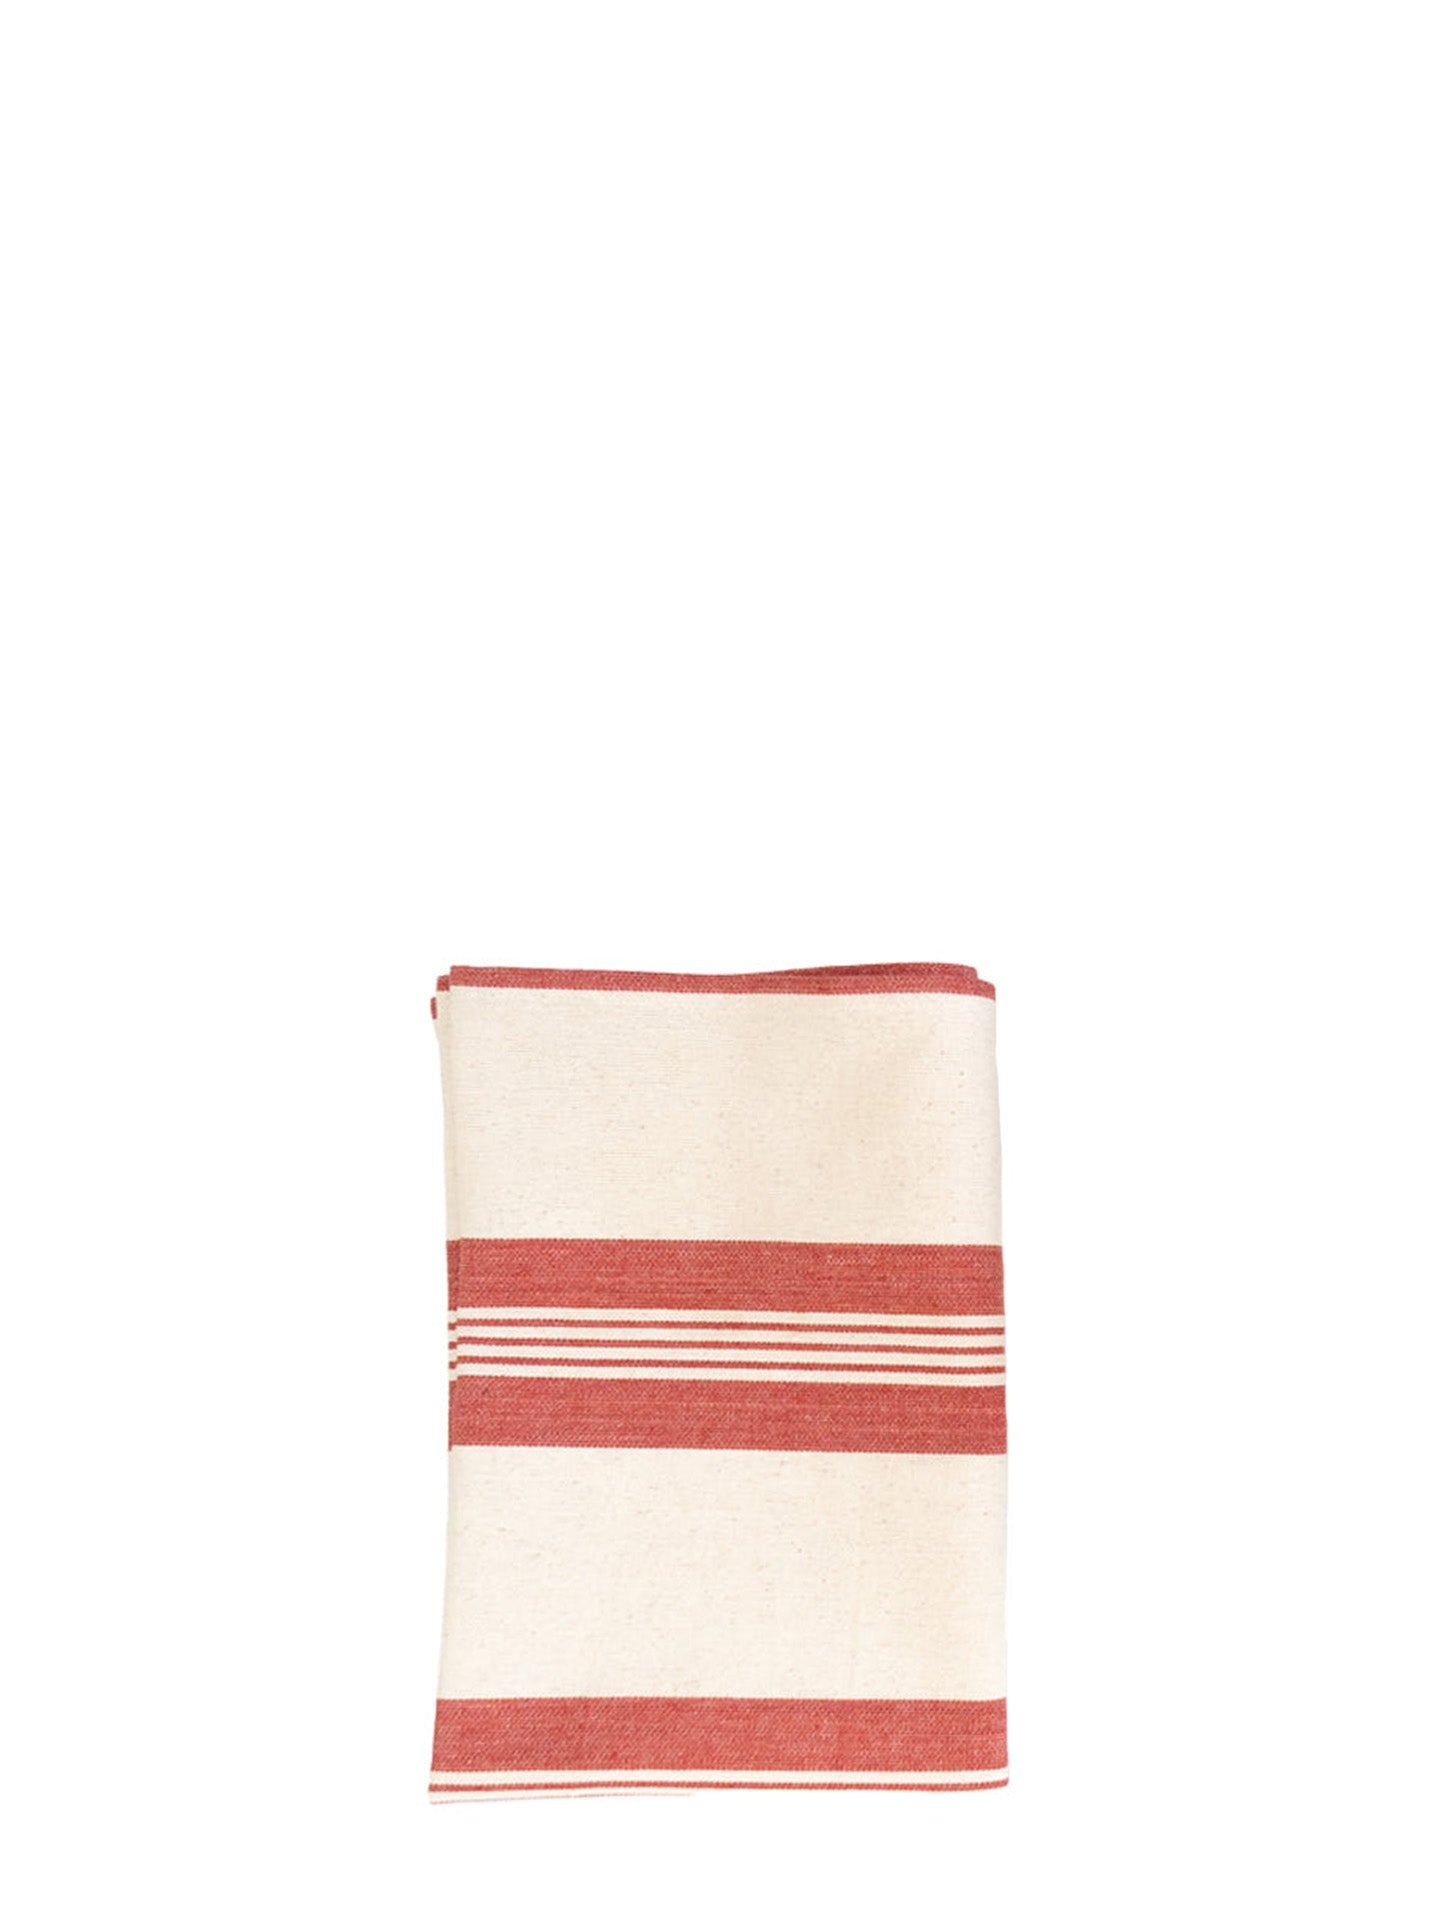 Cotton Kitchen Towel no 1, red